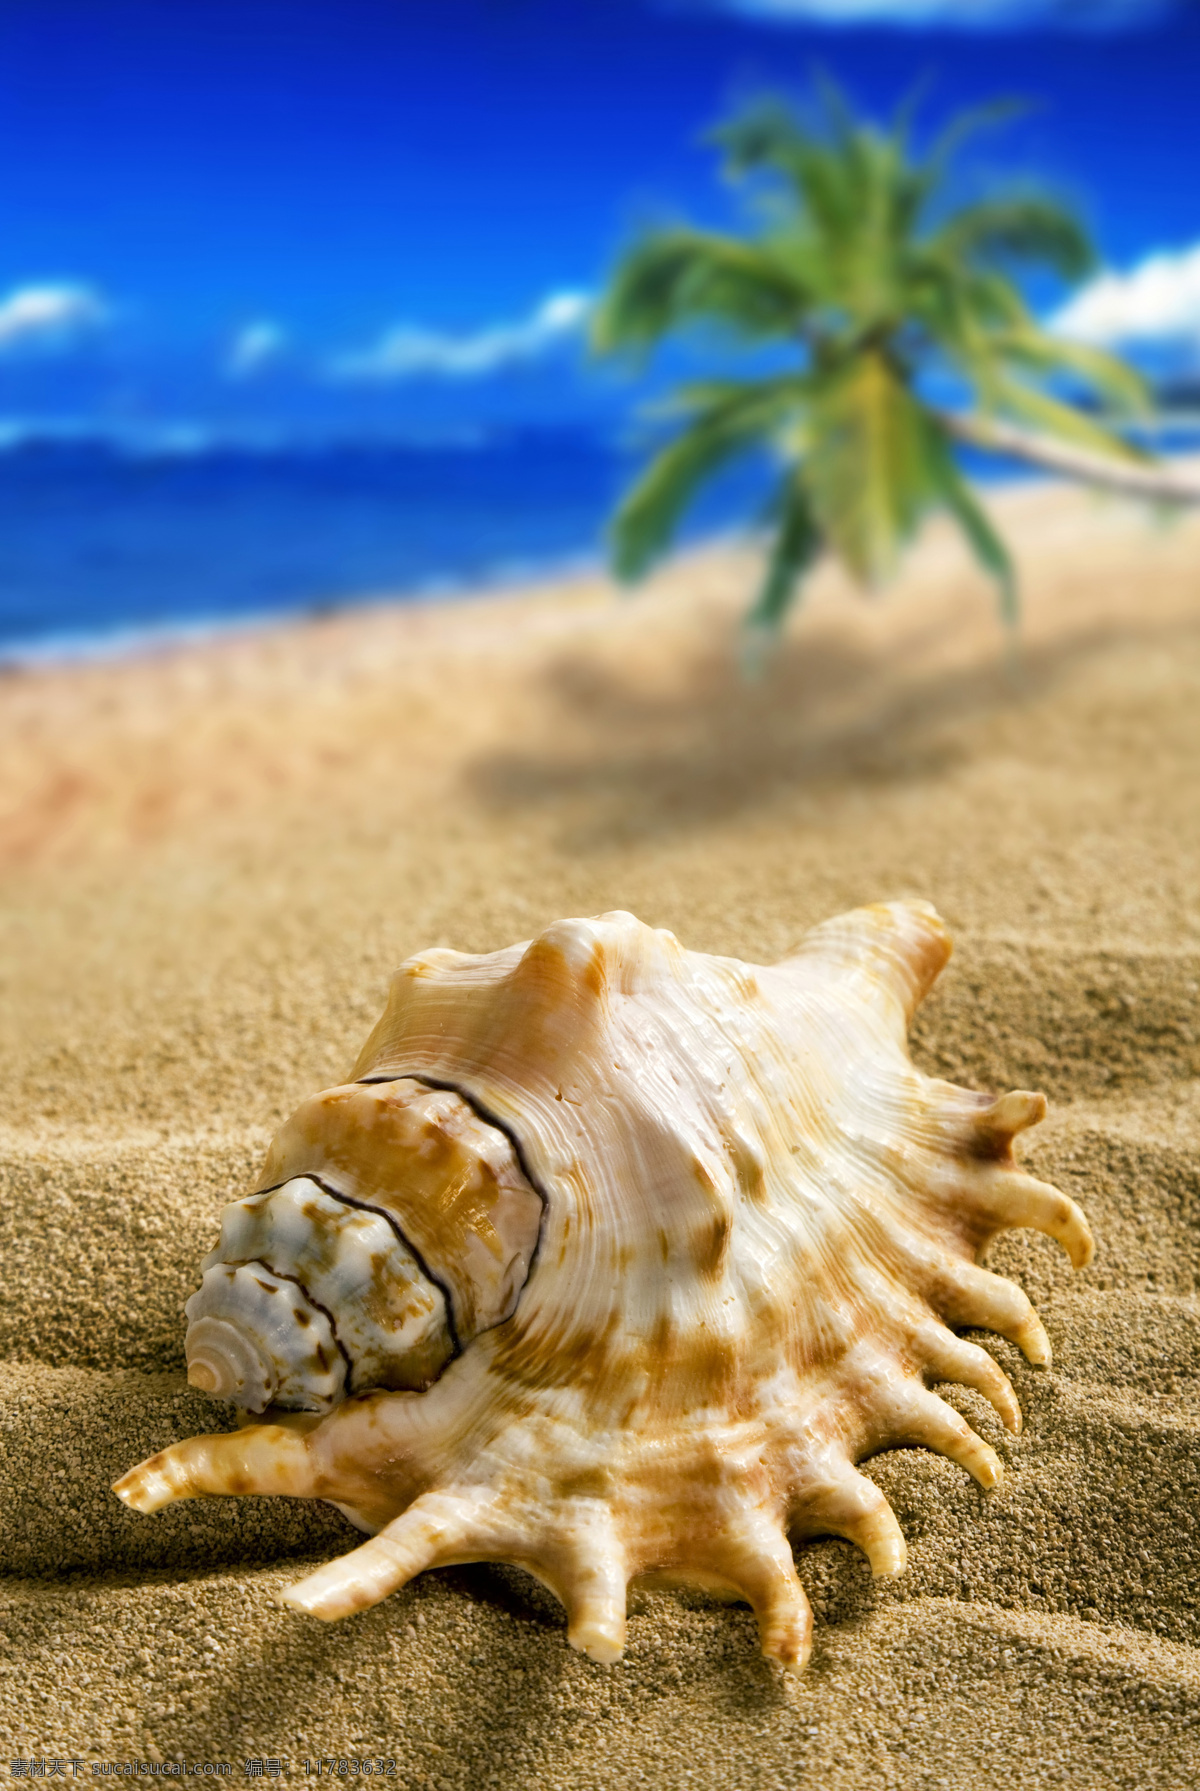 夏日 沙滩 海螺 夏日海滩 夏天 海滩 沙子 贝壳 椰树 暑假 旅游 高清图片 海洋海边 自然景观 蓝色